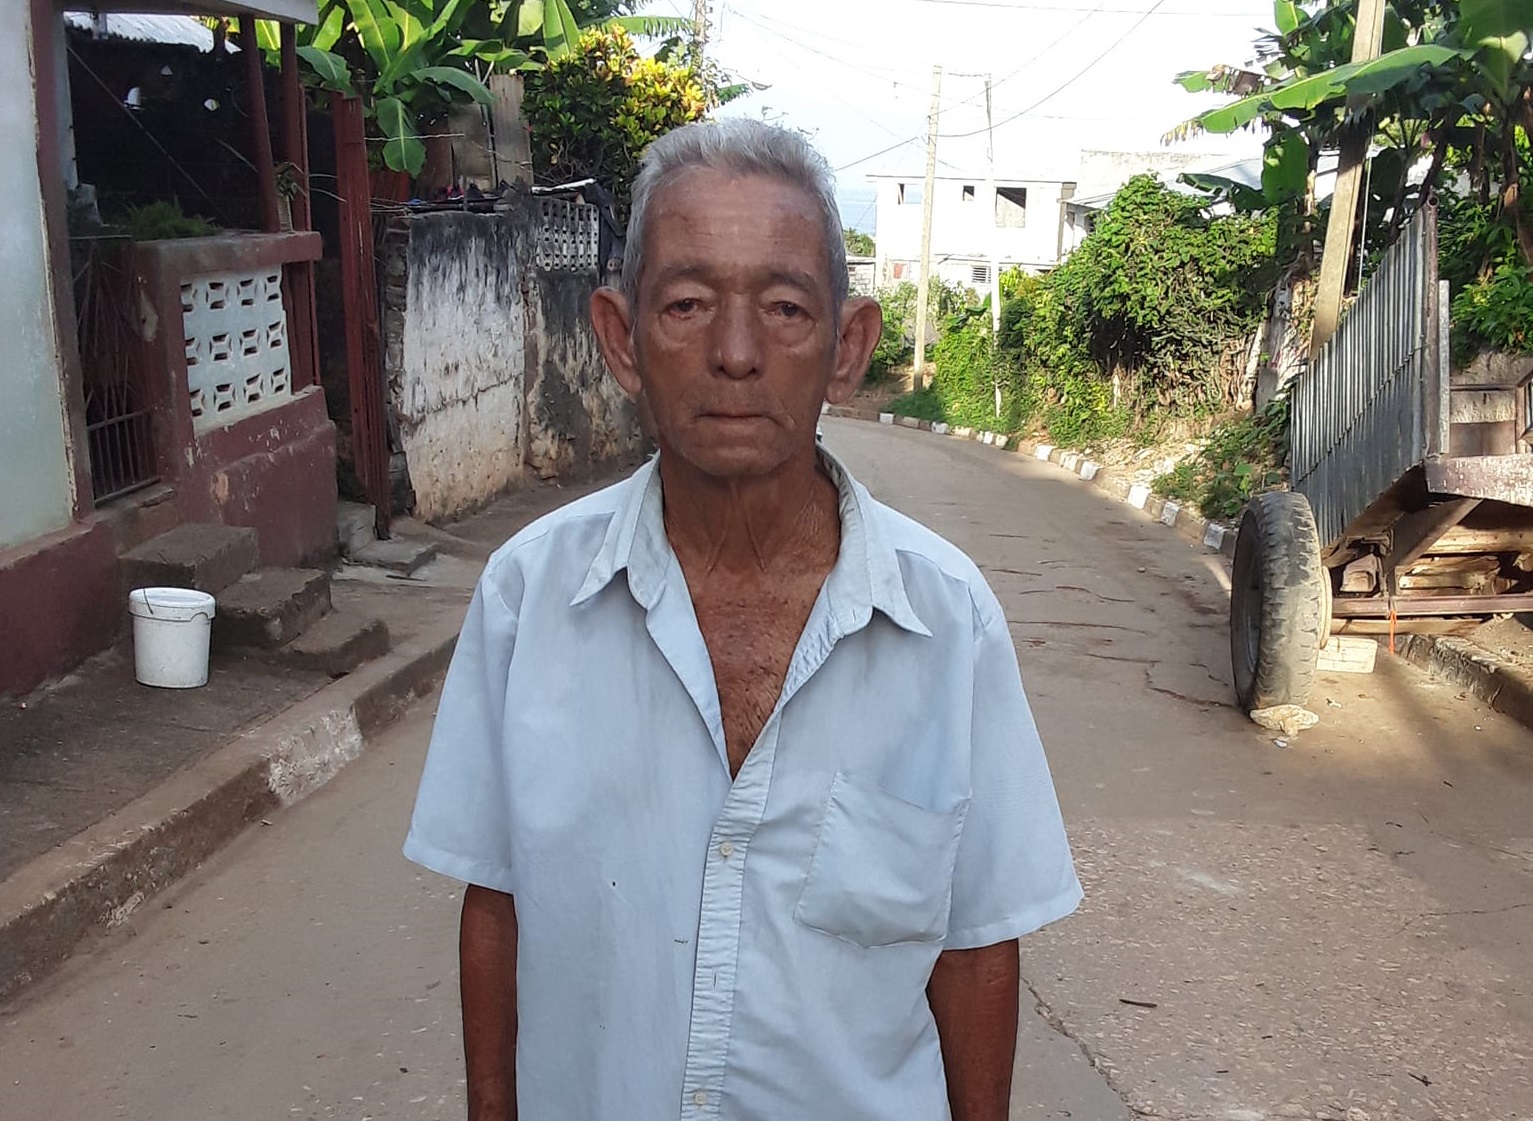 Piden ayuda en redes sociales para encontrar a un anciano extraviado que abordó un tren a La Habana